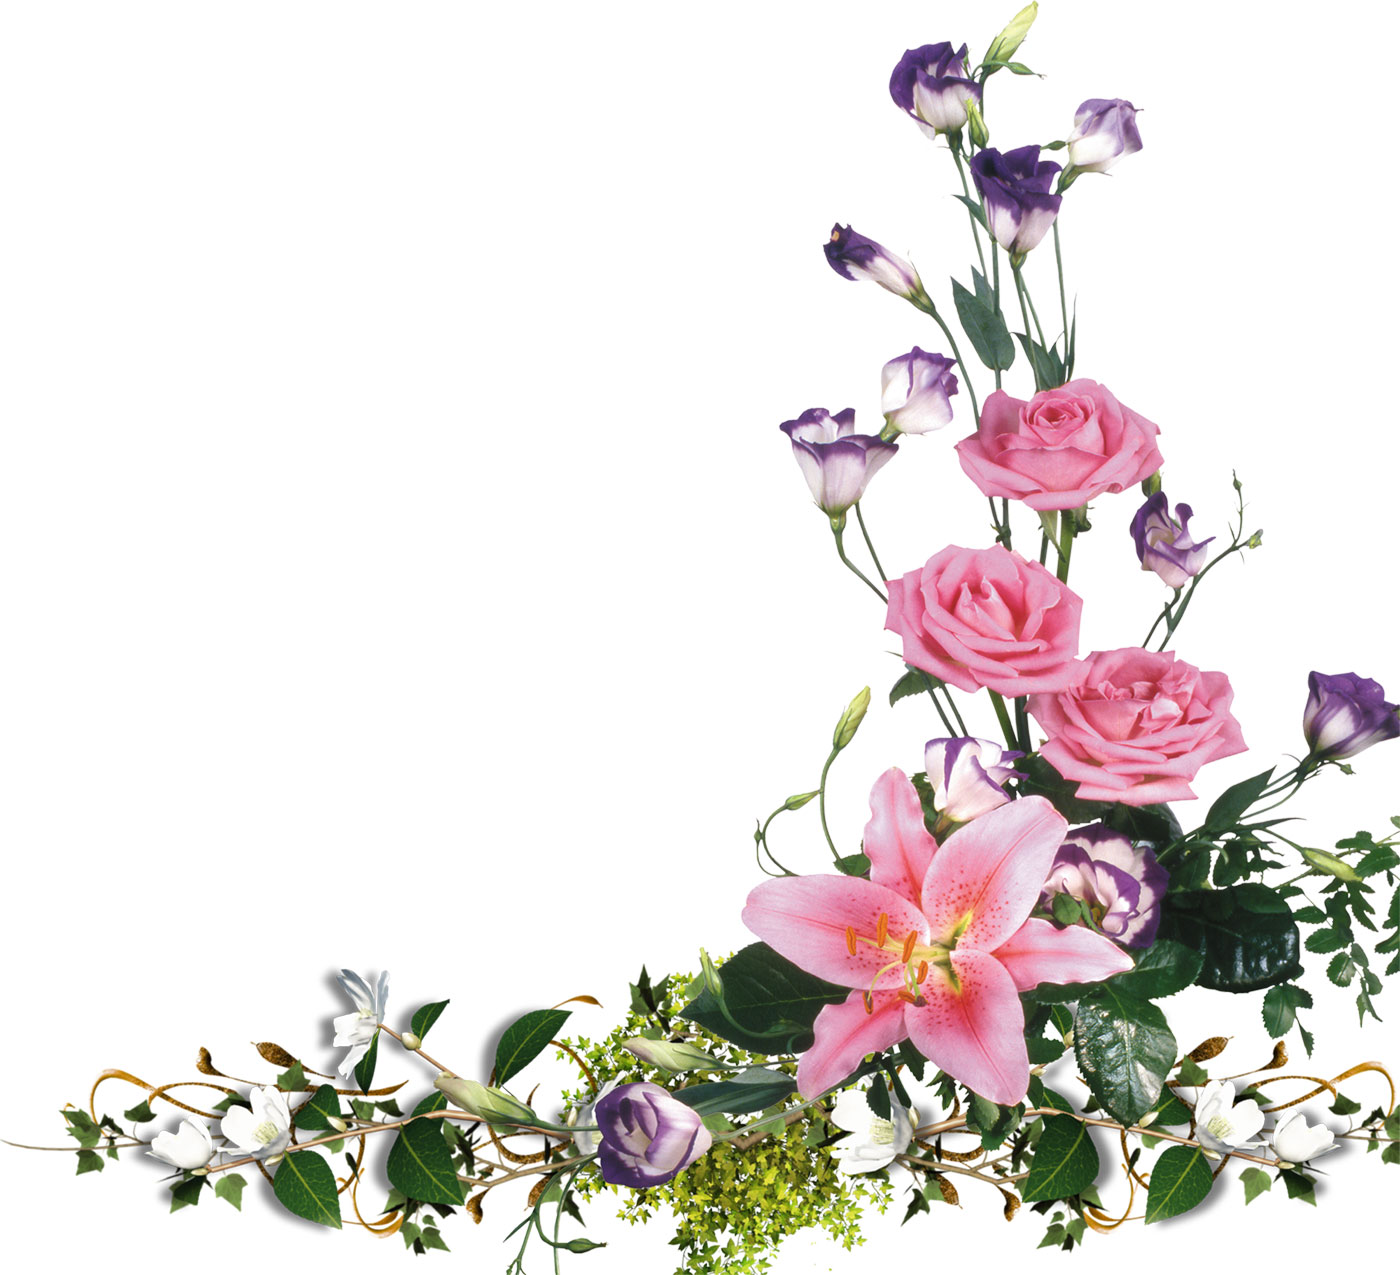 花や葉の写真 画像 フリー素材 No 444 ピンク 紫の花々